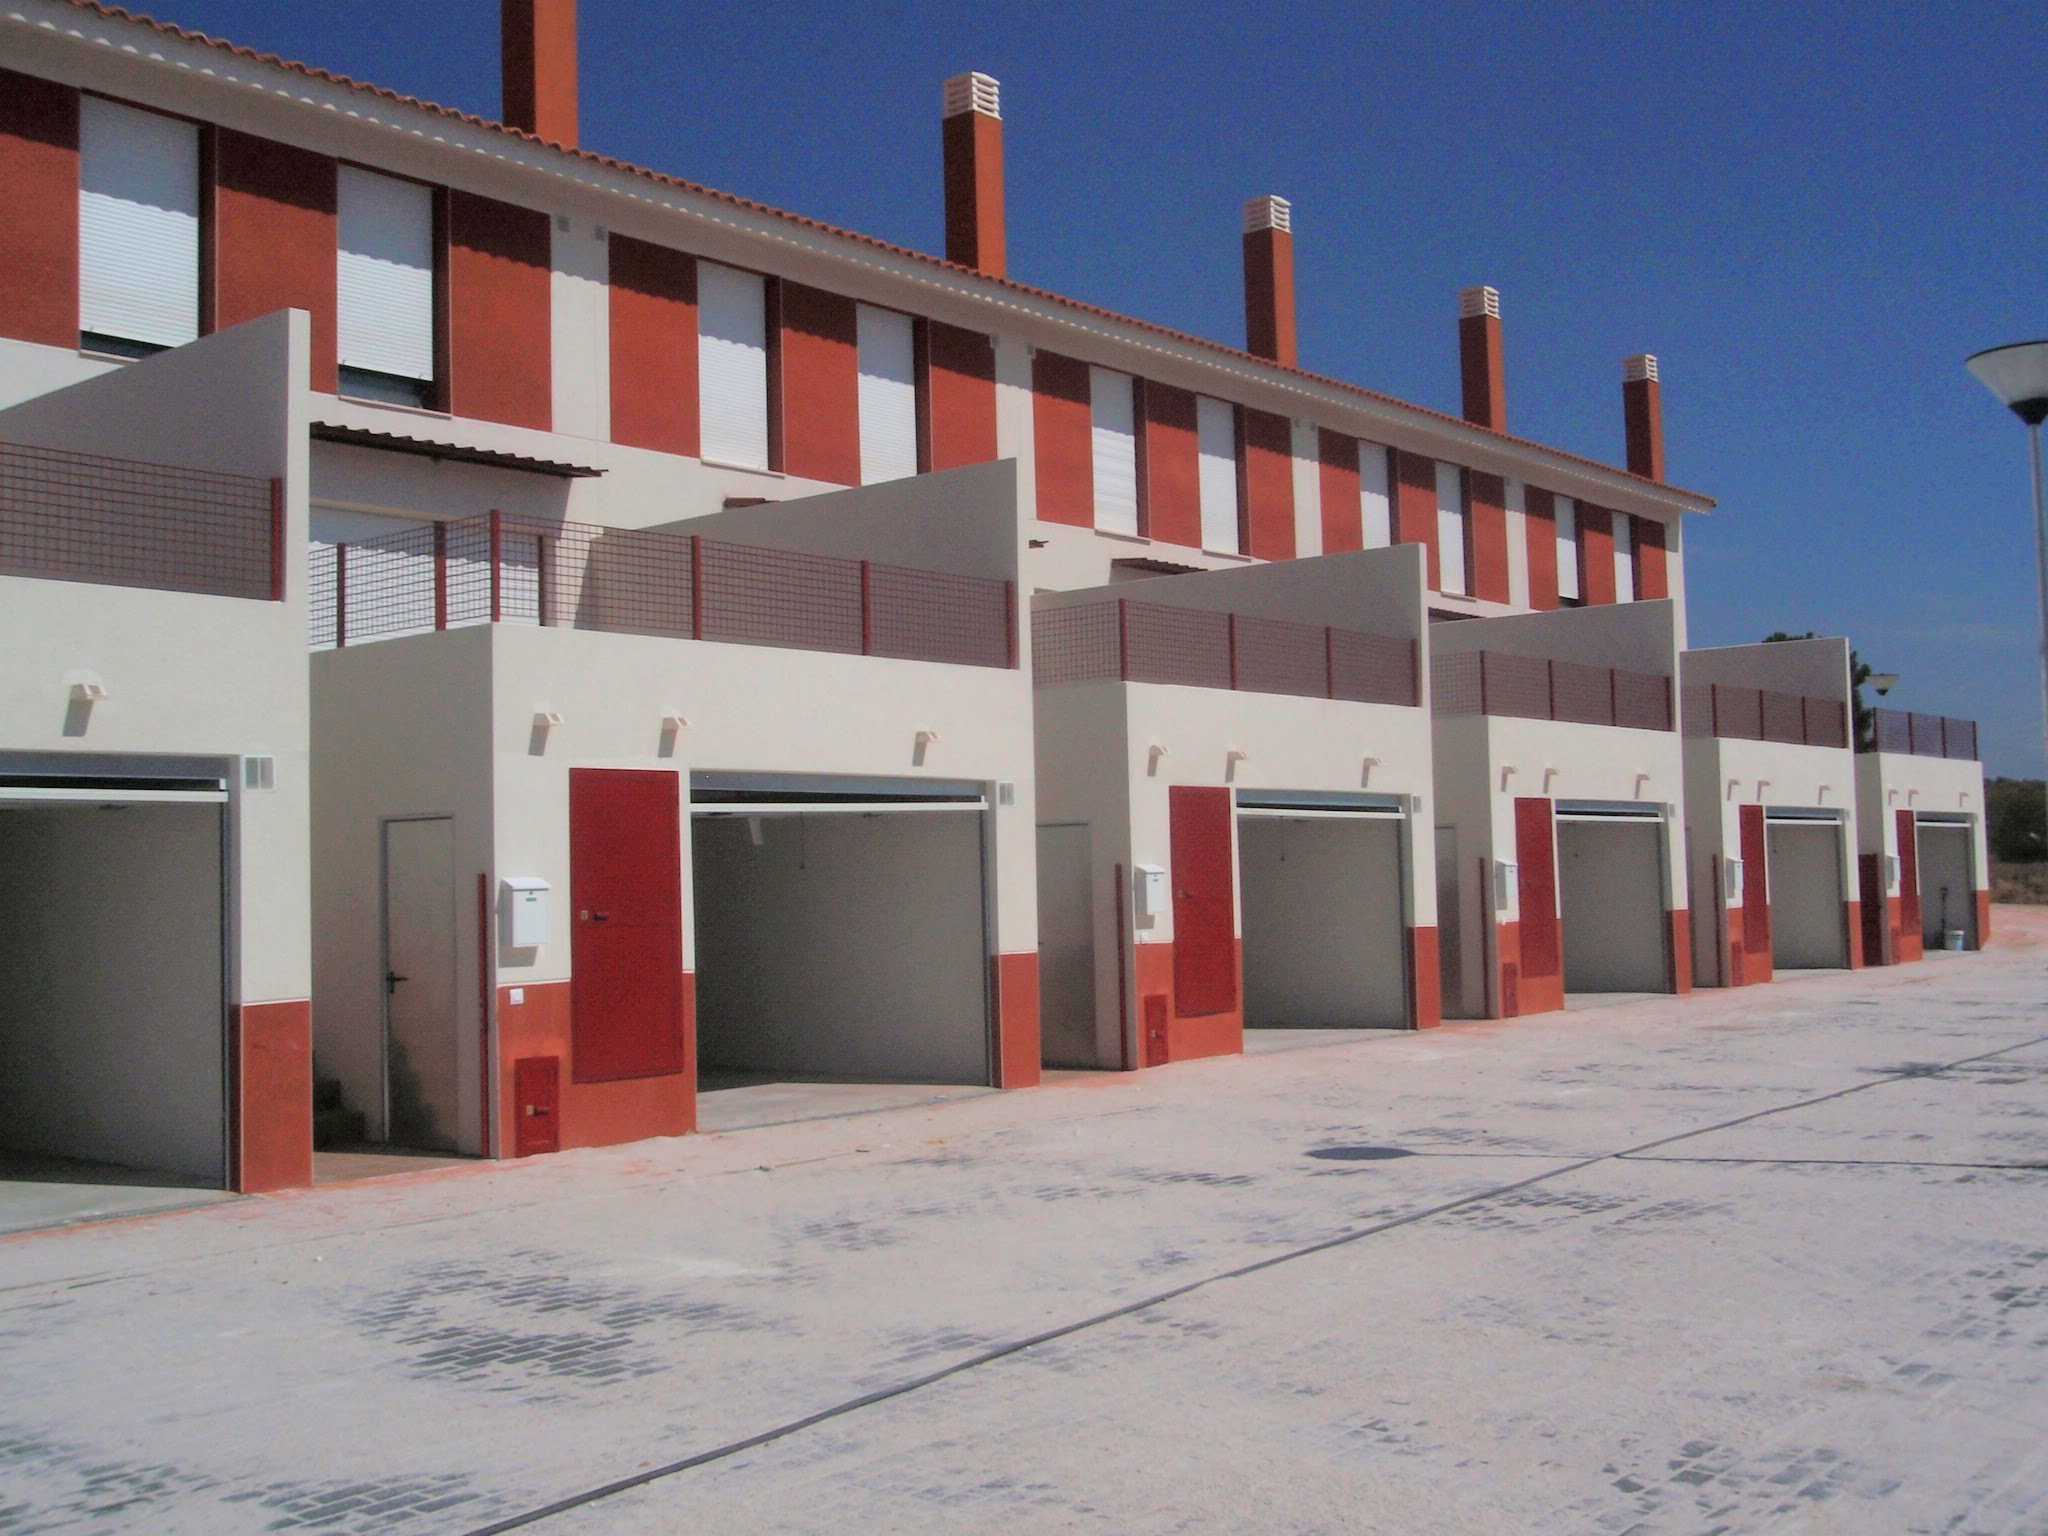 14 viviendas VPO (Régimen especial), Carretera de Camporrobles (Cardenete)</br></br> 2008</br></br><h4>Cliente: GICAMAN (Gestión de Infraestructuras de Castilla-La Mancha S.A.)</h4>